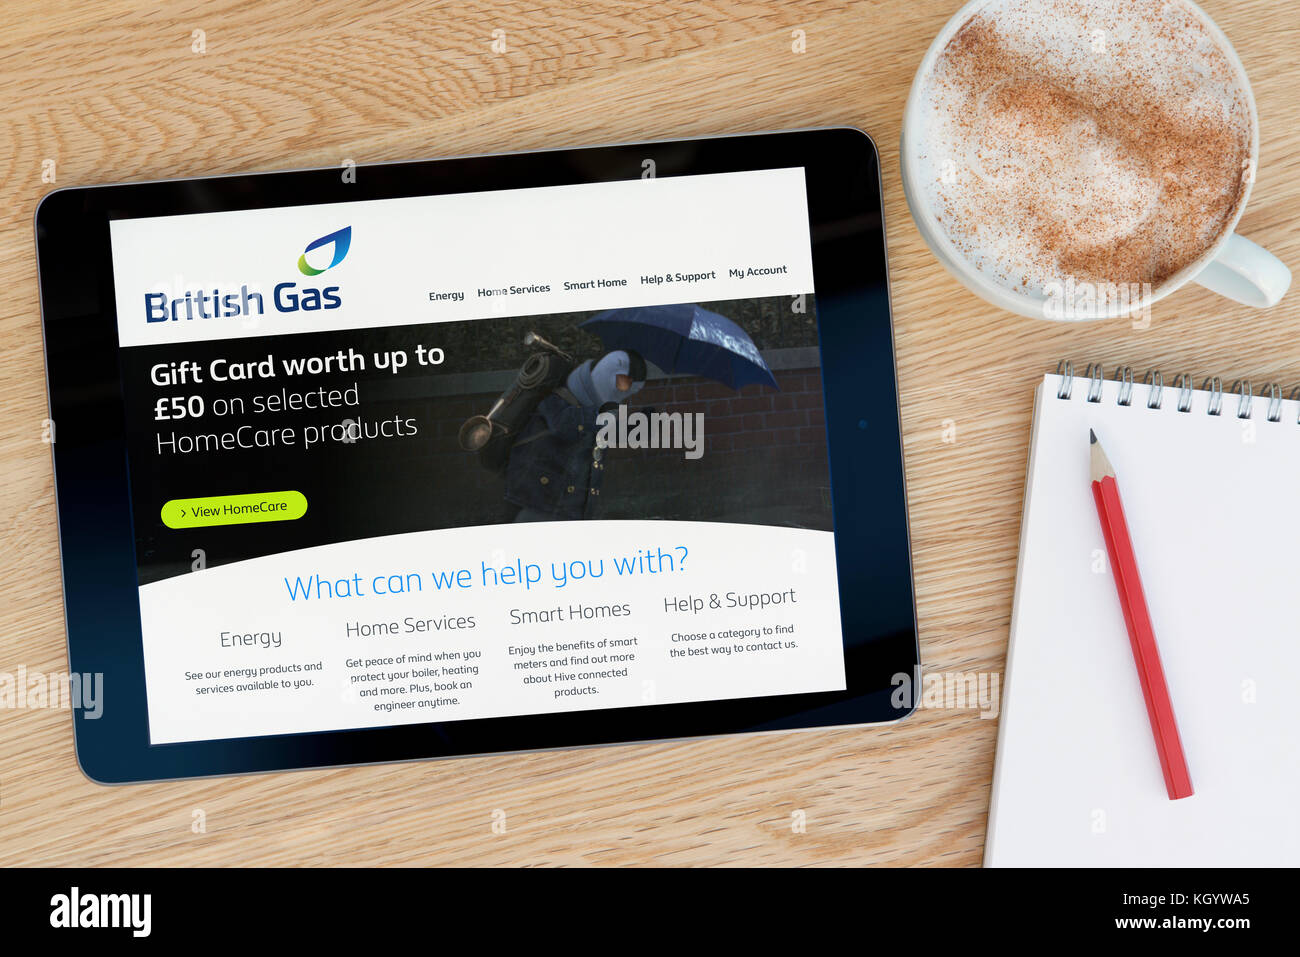 Die British Gas website Funktionen auf einem iPad Tablet Gerät, das auf einem Tisch liegt neben einem Notizblock und Bleistift und einer Tasse Kaffee (nur redaktionell) Stockfoto